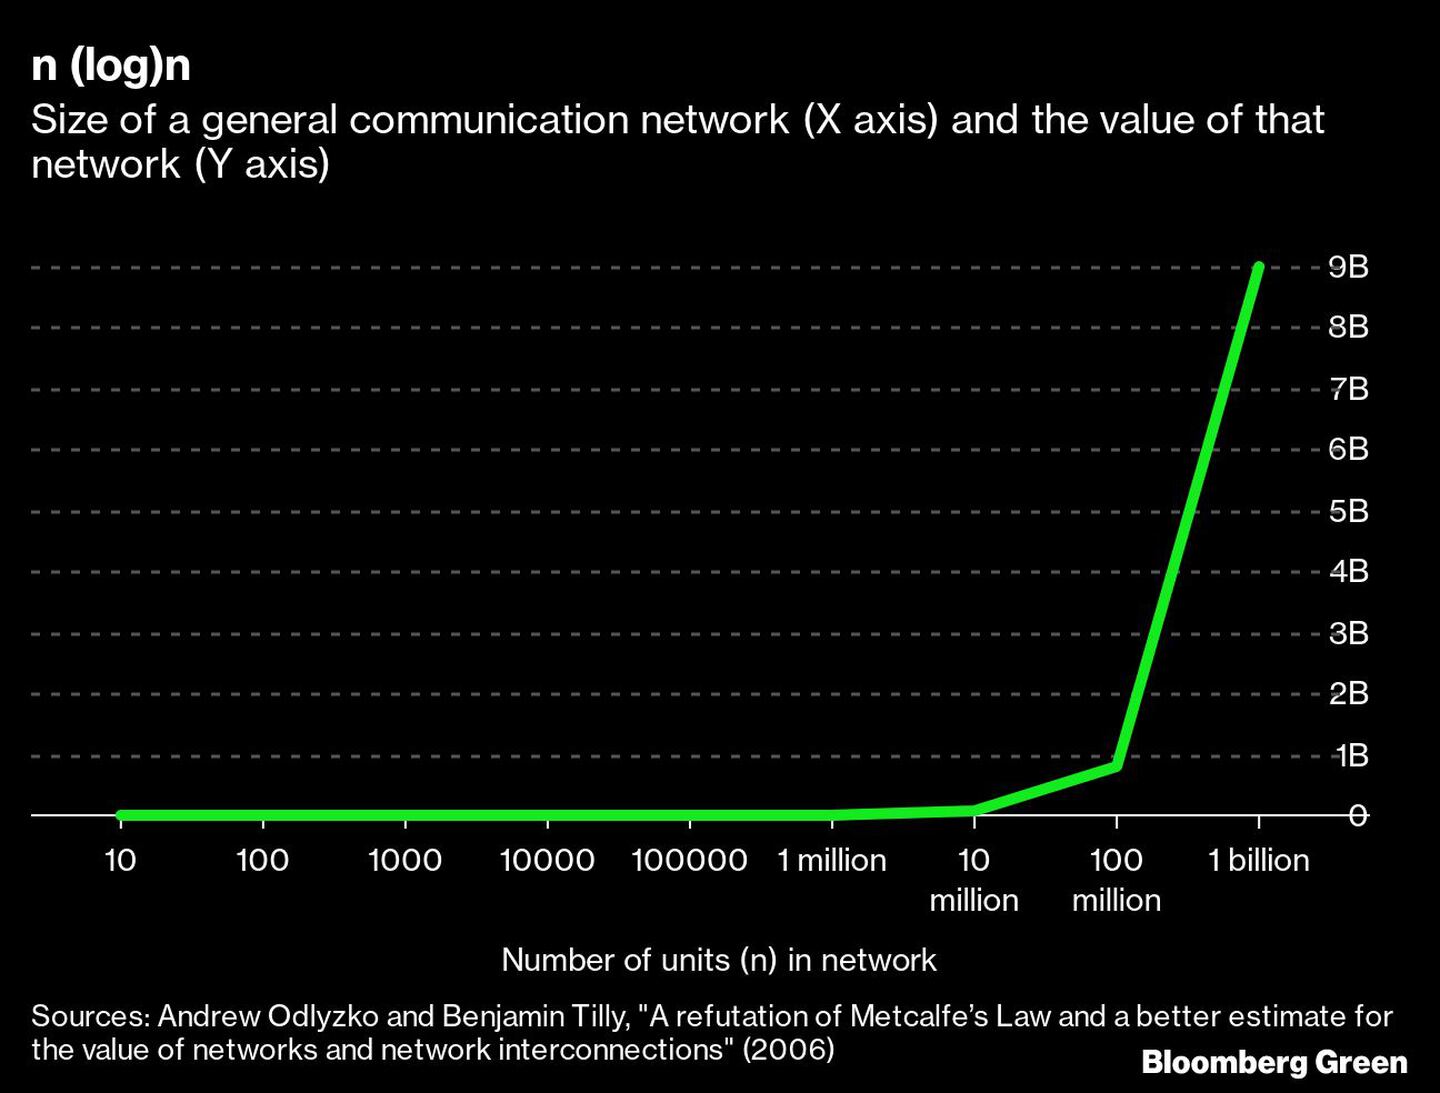 Tamaño de la red de comunicaciones generas (eje X) y valor de esa red (eje Y),dfd